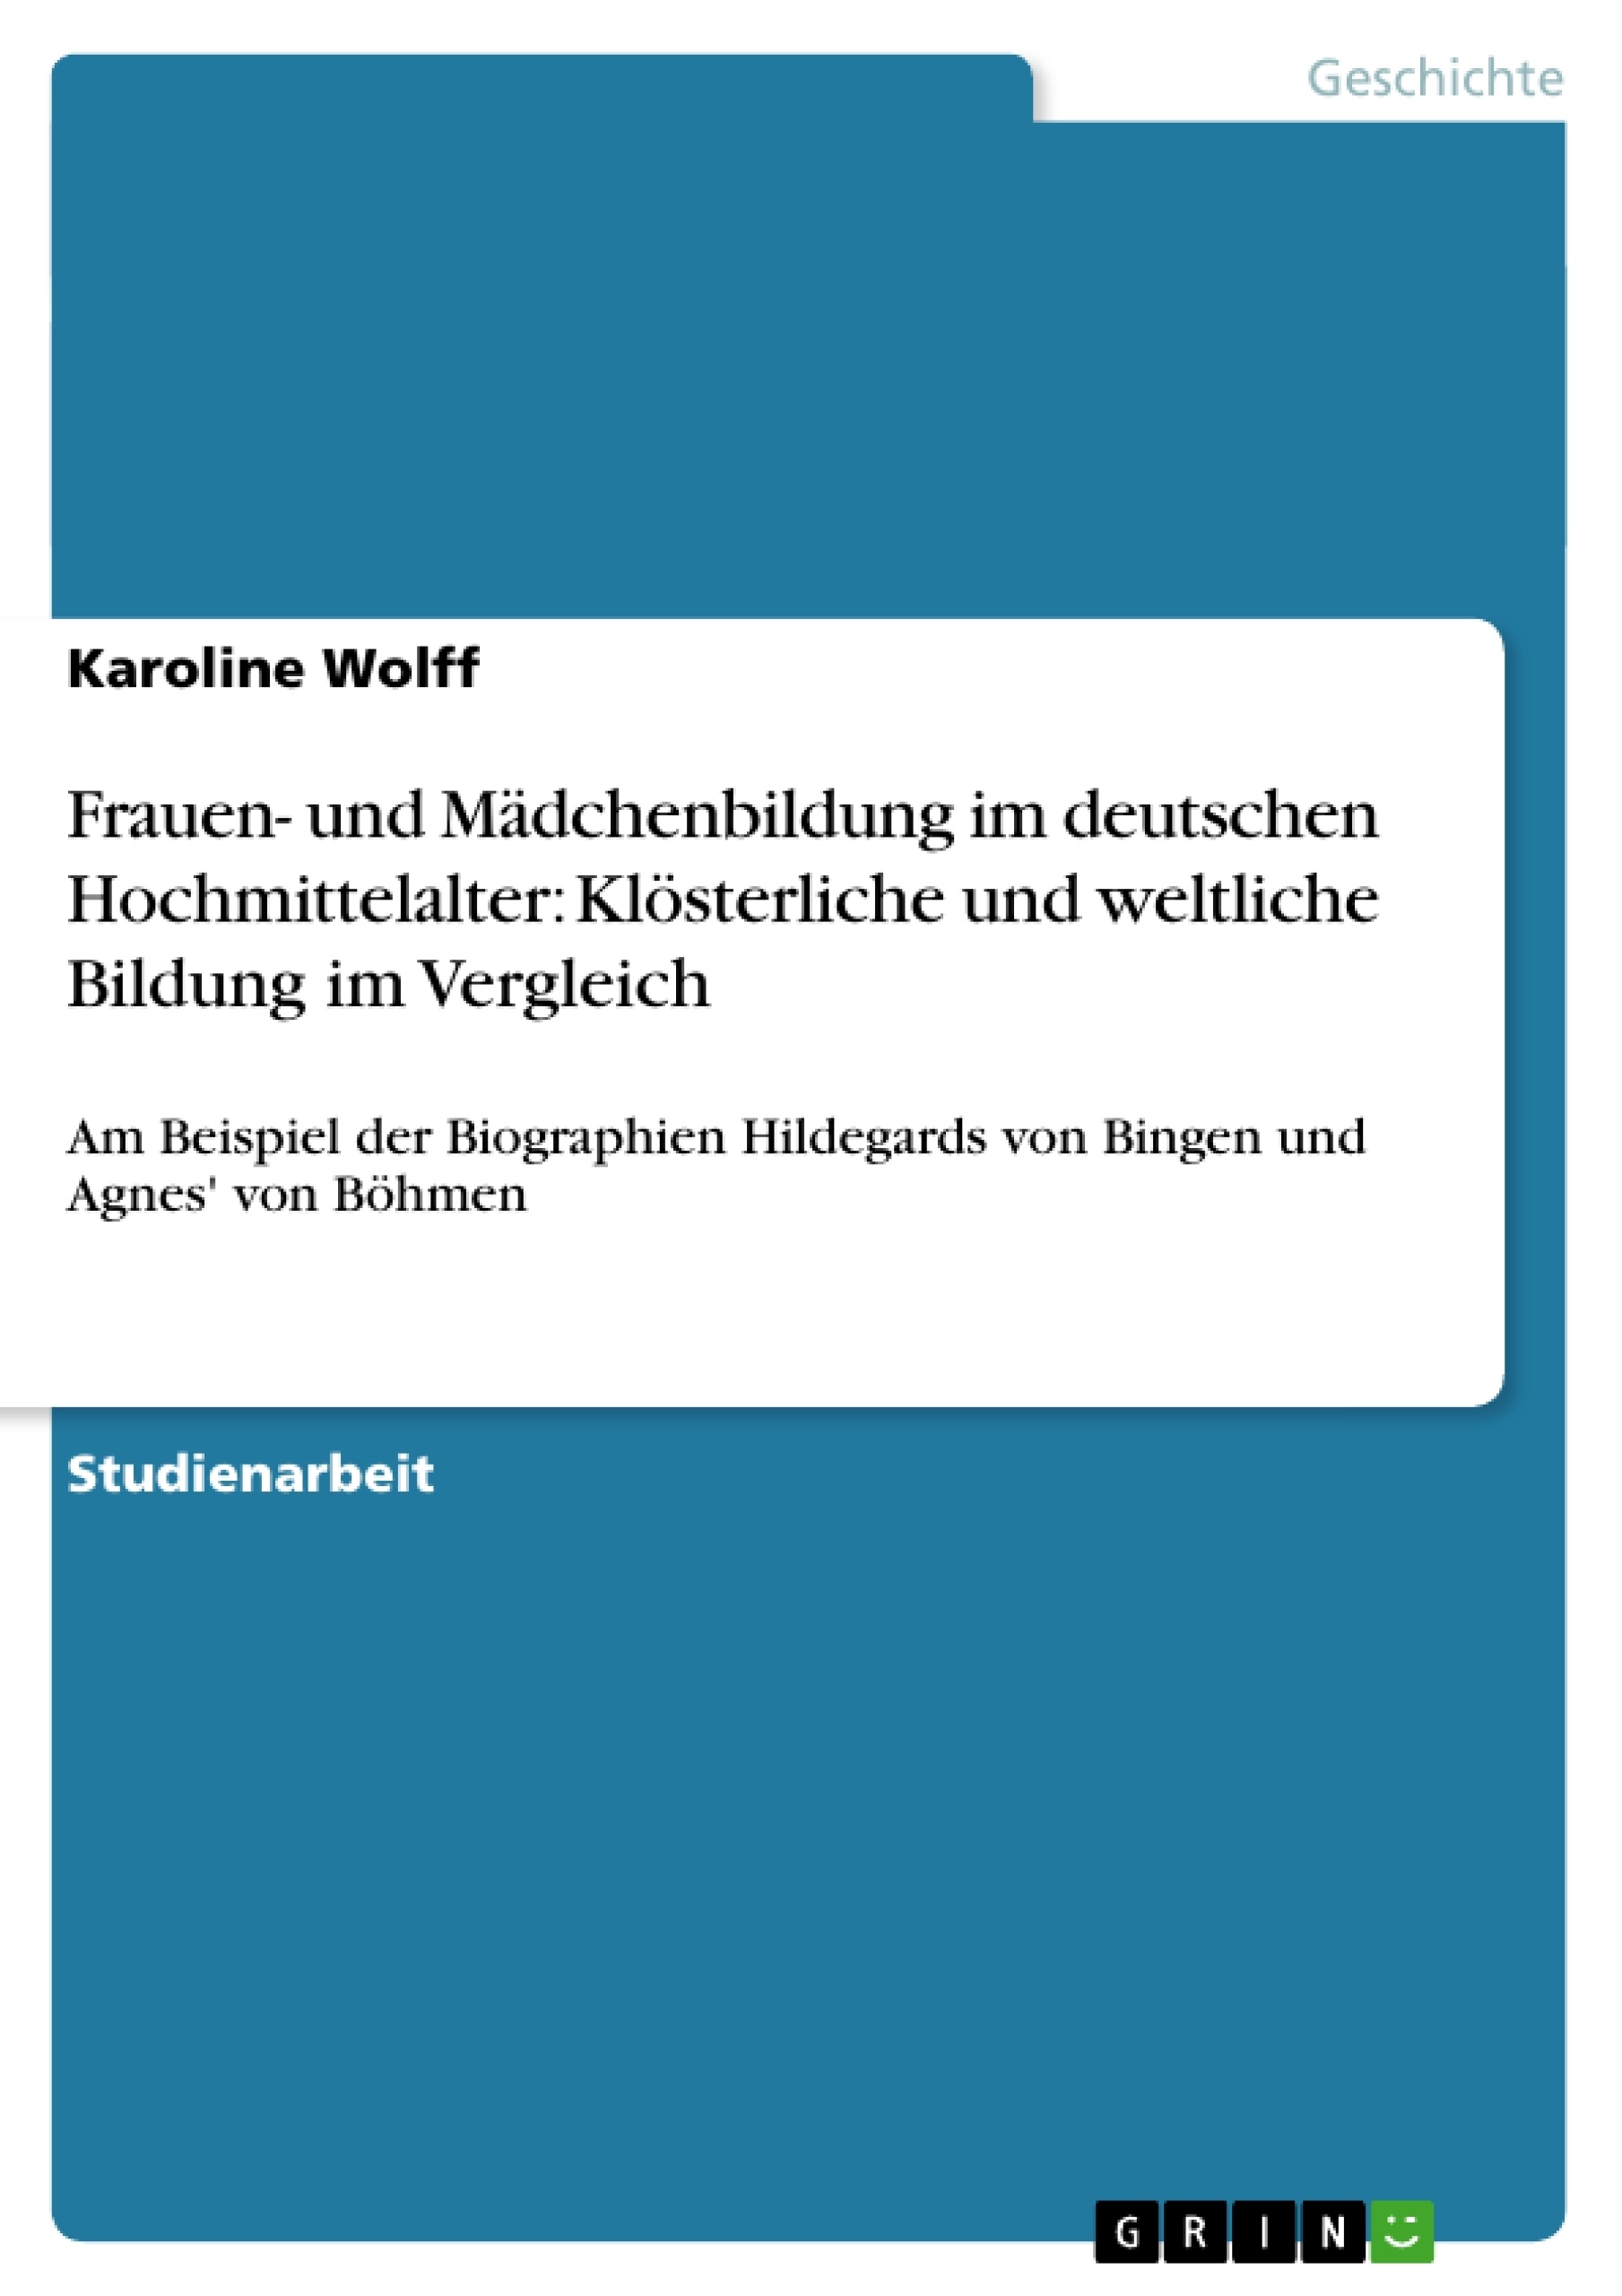 Titre: Frauen- und Mädchenbildung im deutschen Hochmittelalter: Klösterliche und weltliche Bildung im Vergleich